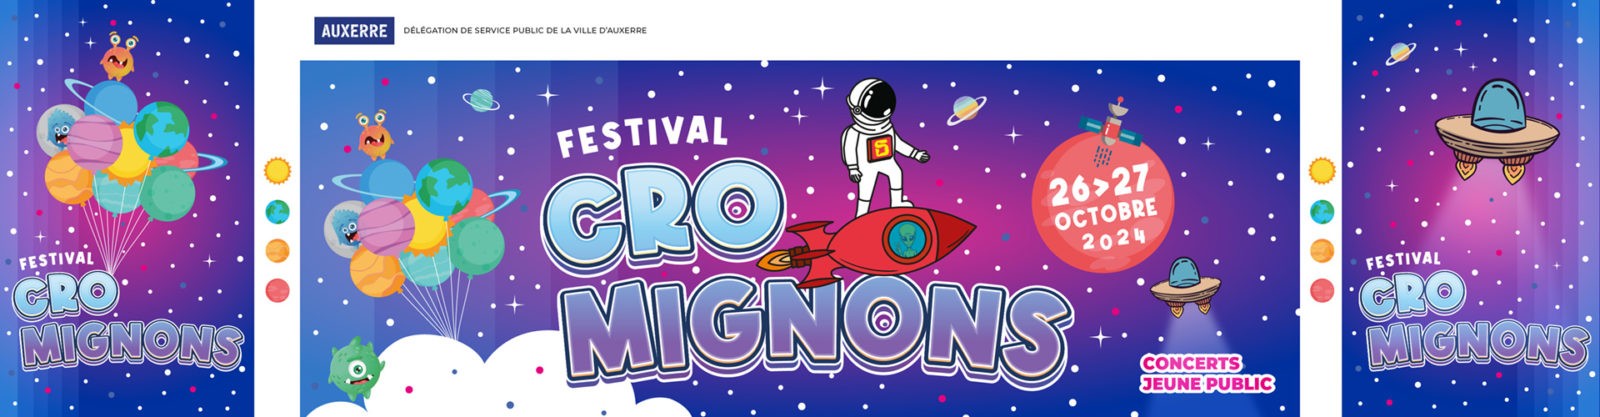 Cro Mignons Festival 2024